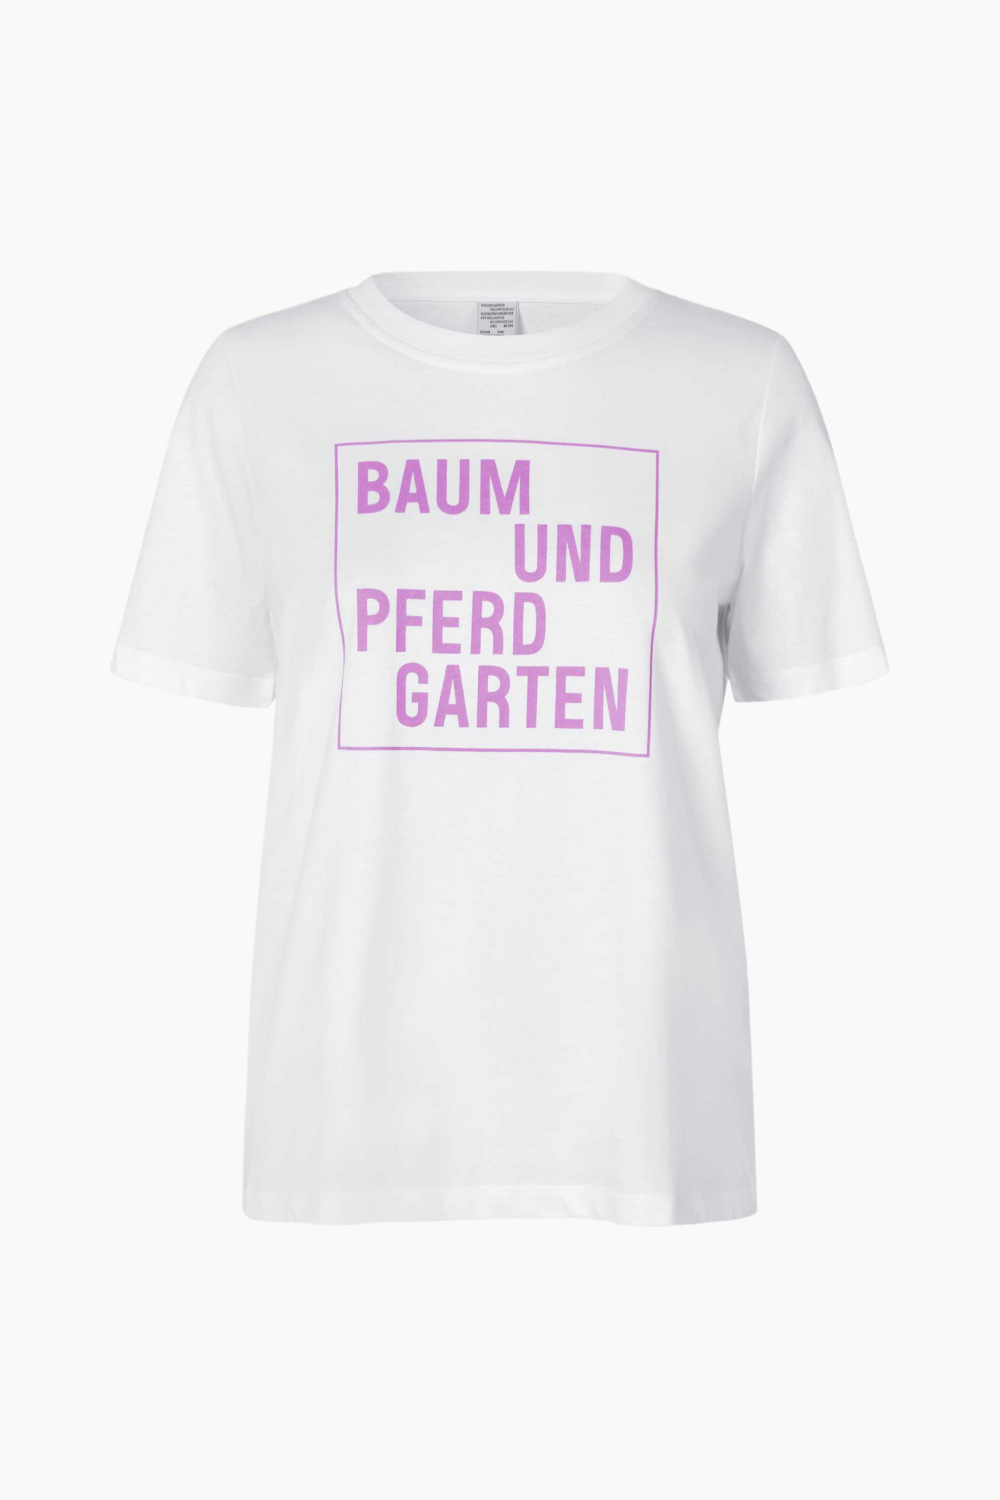 Se Jawo T-Shirt - Orchid Logo Box - Baum und Pferdgarten - Hvid XL hos QNTS.dk